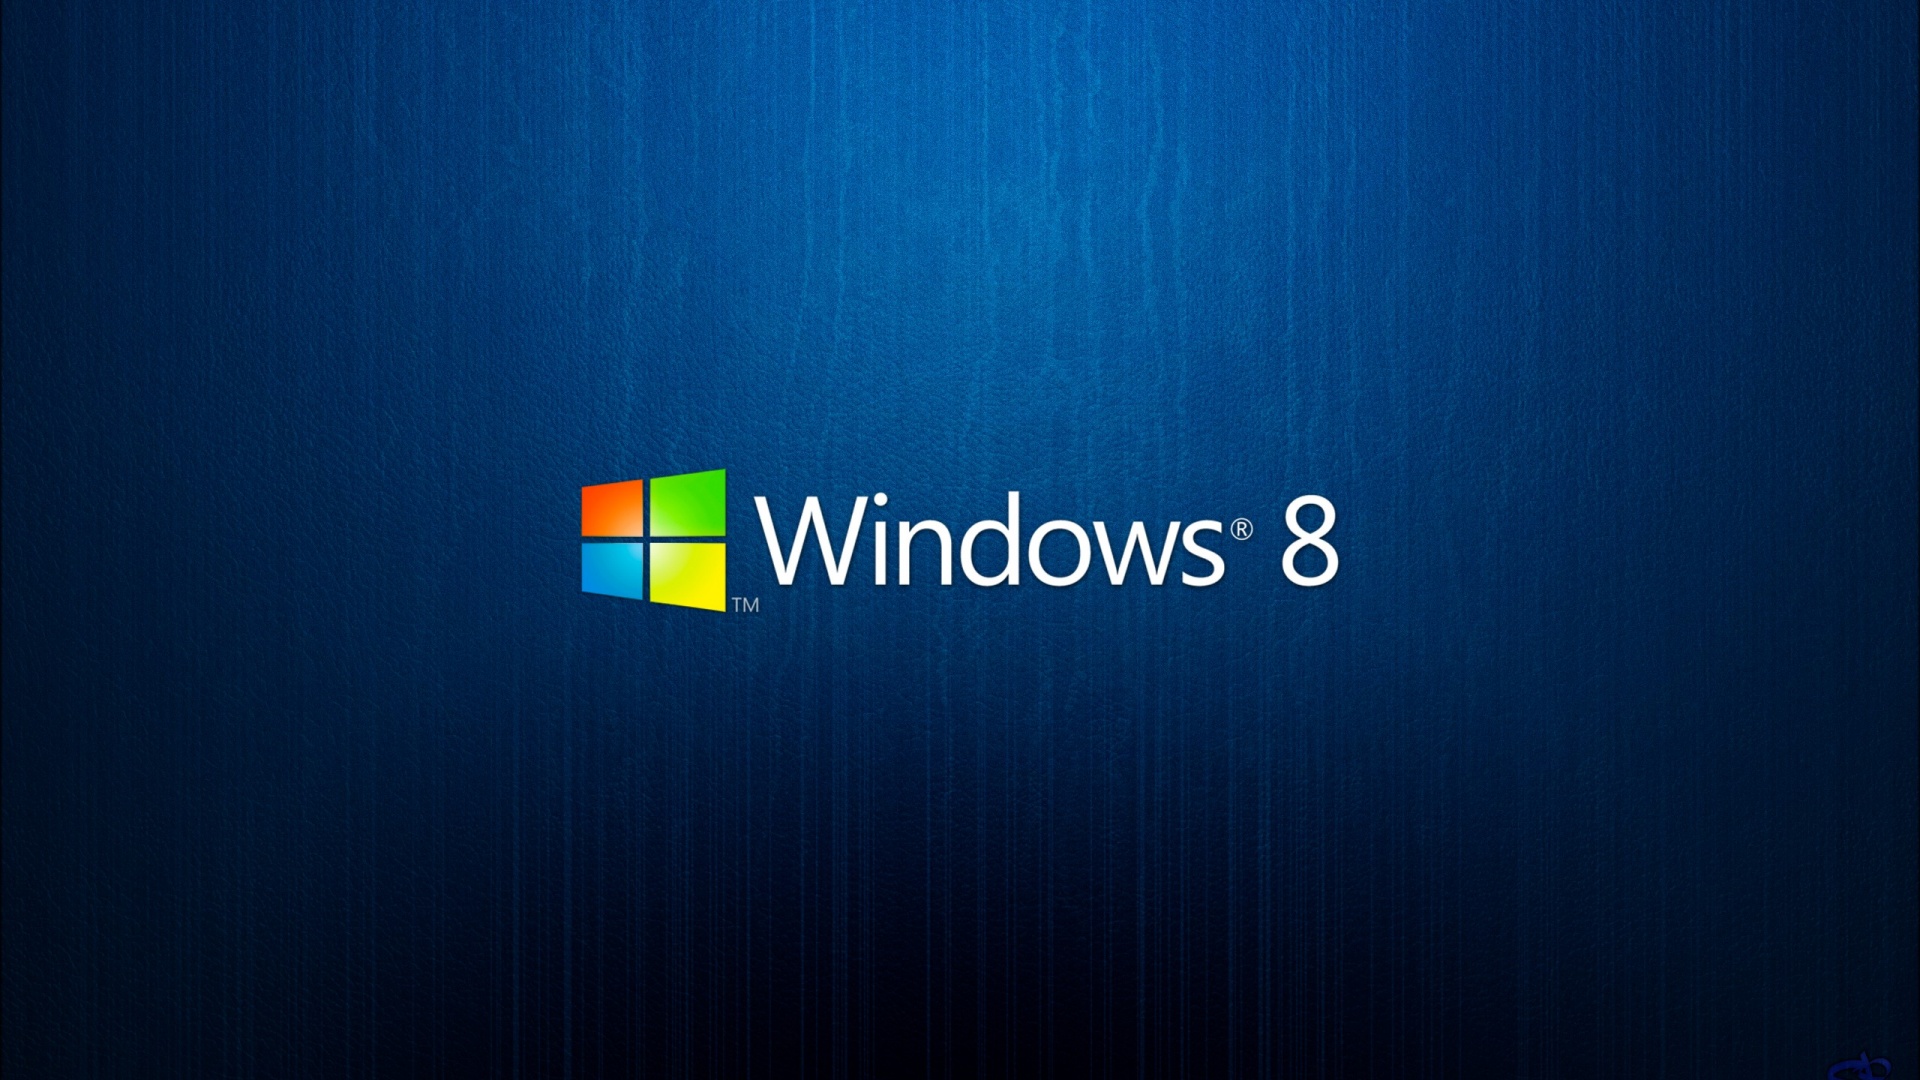 Windows 8 Background 1920x1080 1920x1080